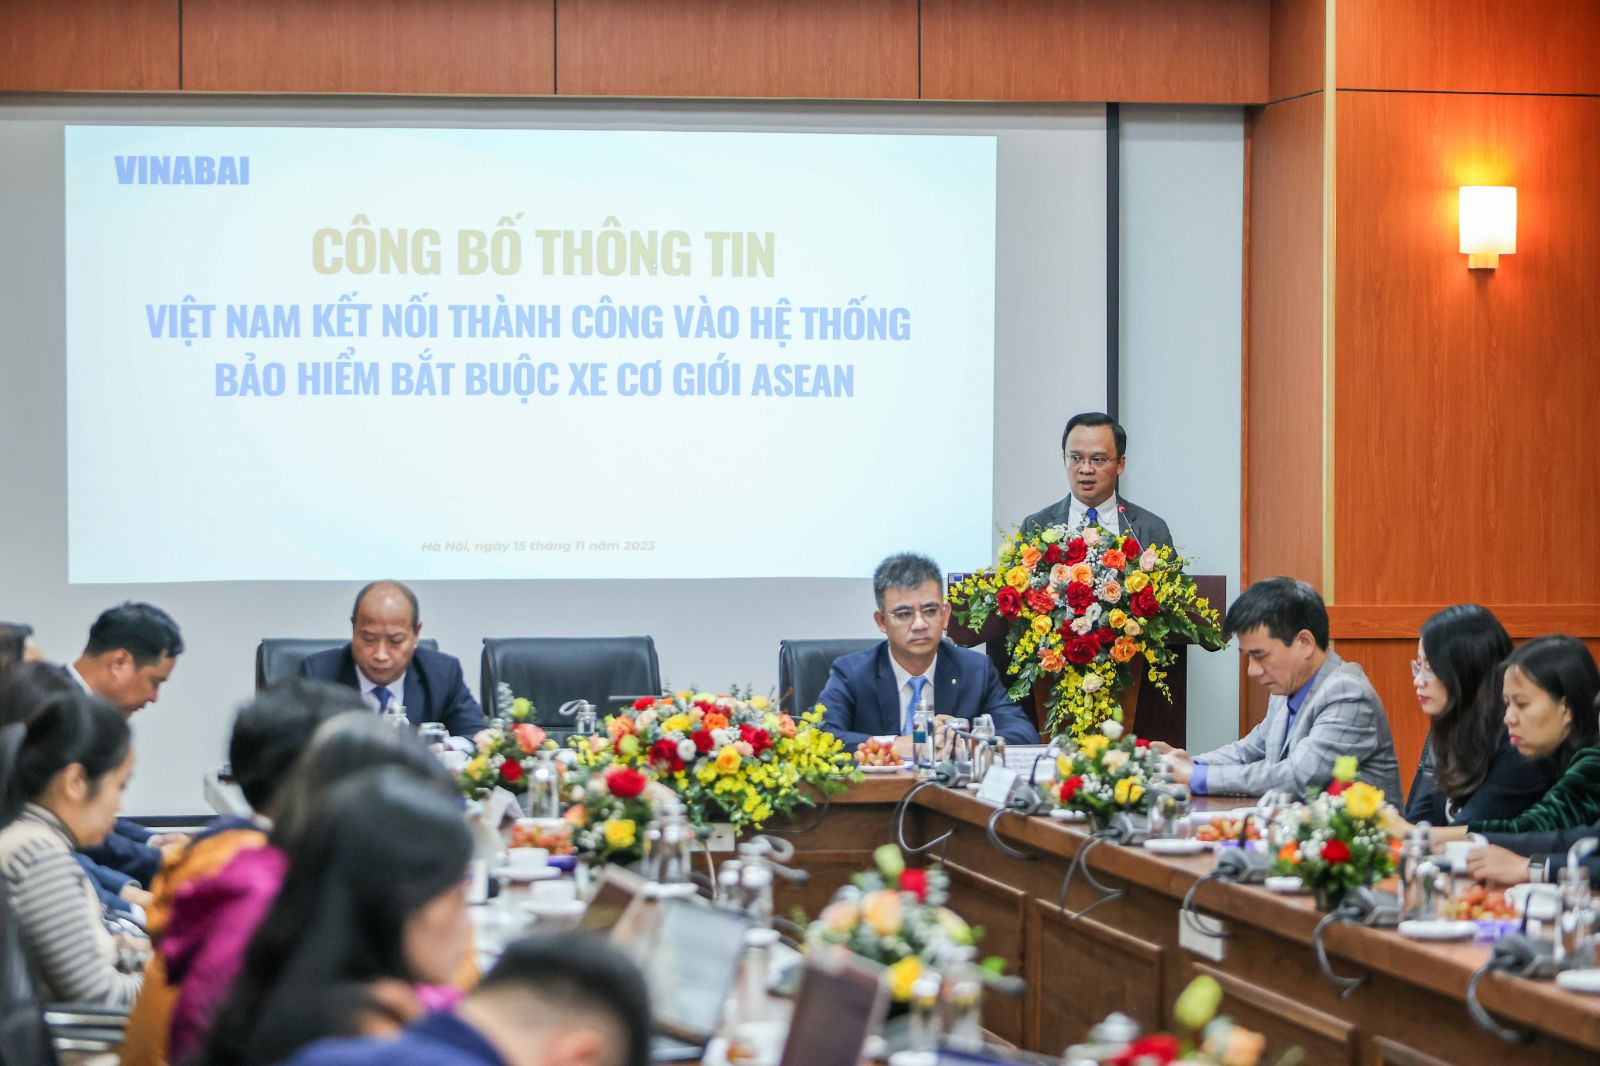 Ông Nguyễn Anh Tuấn, Chủ tịch VINABAI bày tỏ, Việt Nam kết nối thành công vào hệ thống ACMI có ý nghĩa hết sức đặc biệt